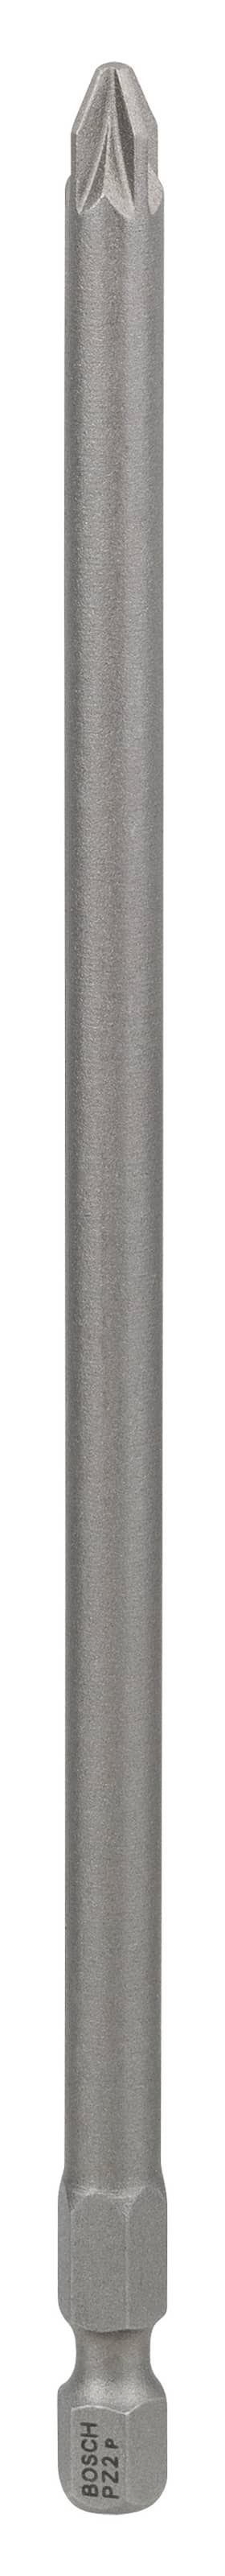 Bosch Ruuvauskärjet Extra-Hart PZ 2, 152 mm